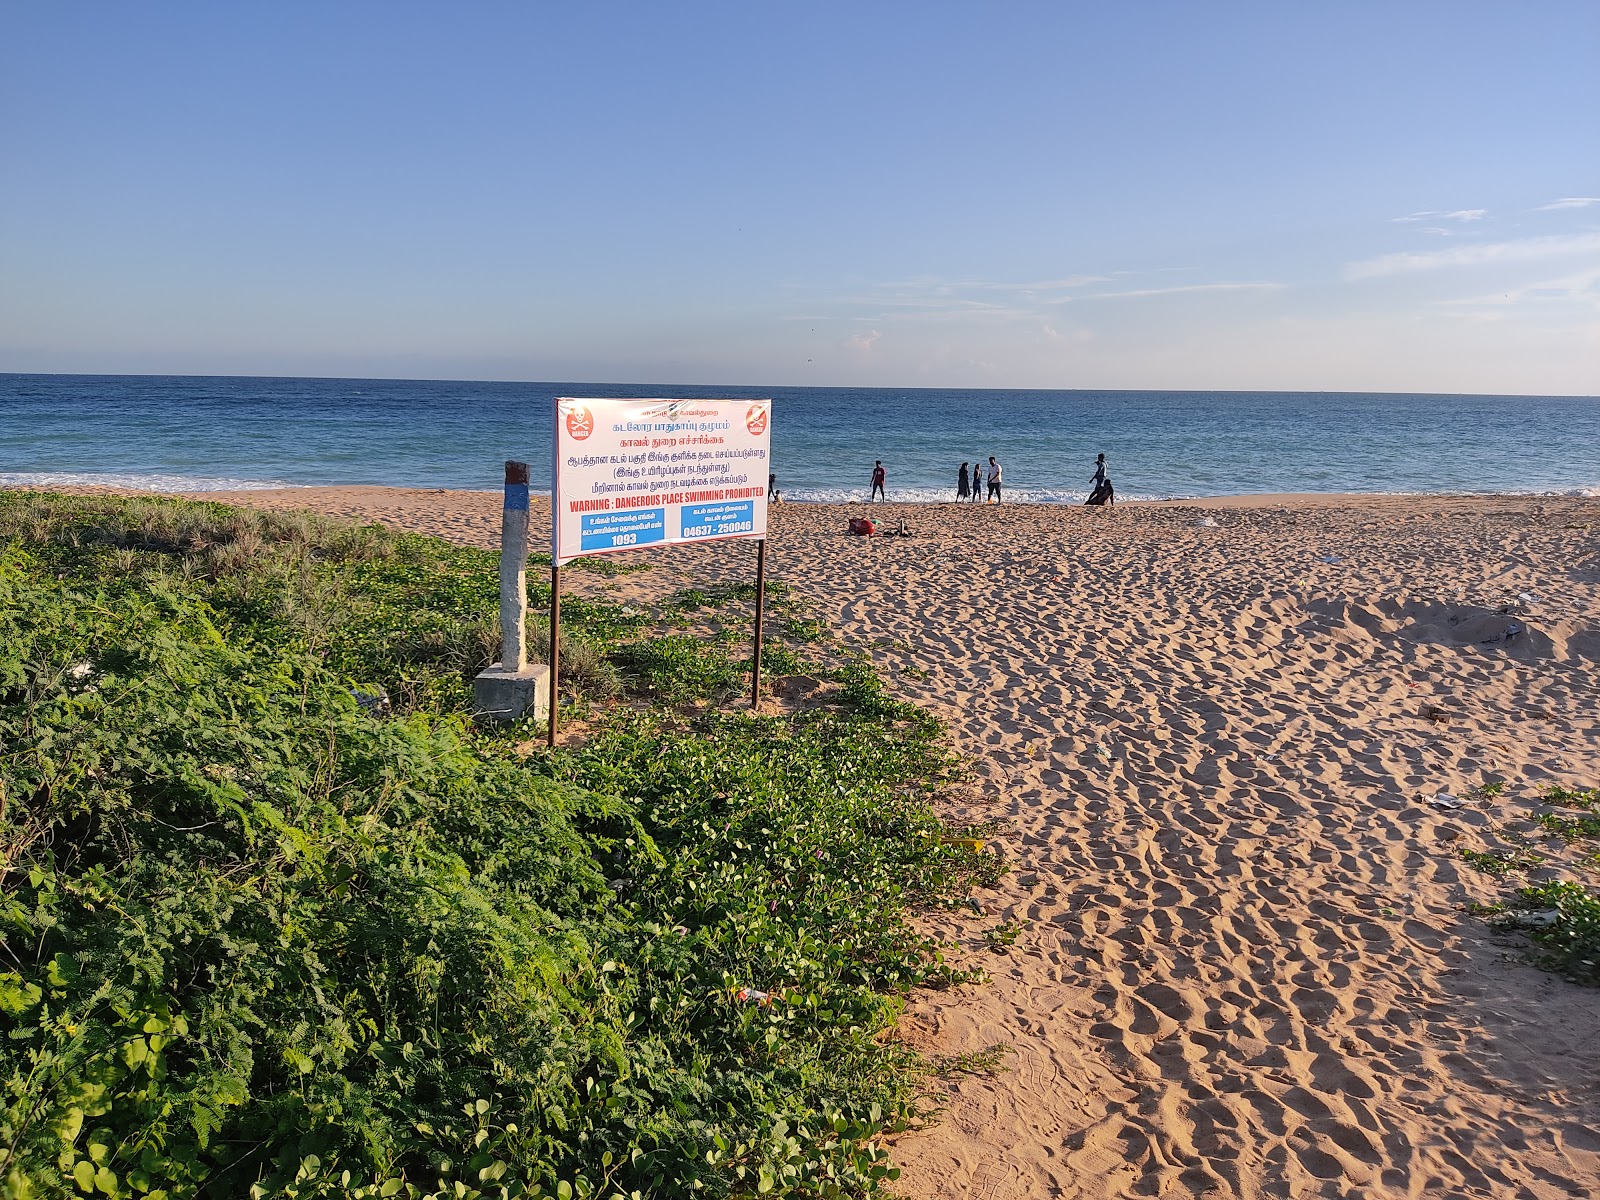 Photo de Chettikulam Beach - endroit populaire parmi les connaisseurs de la détente